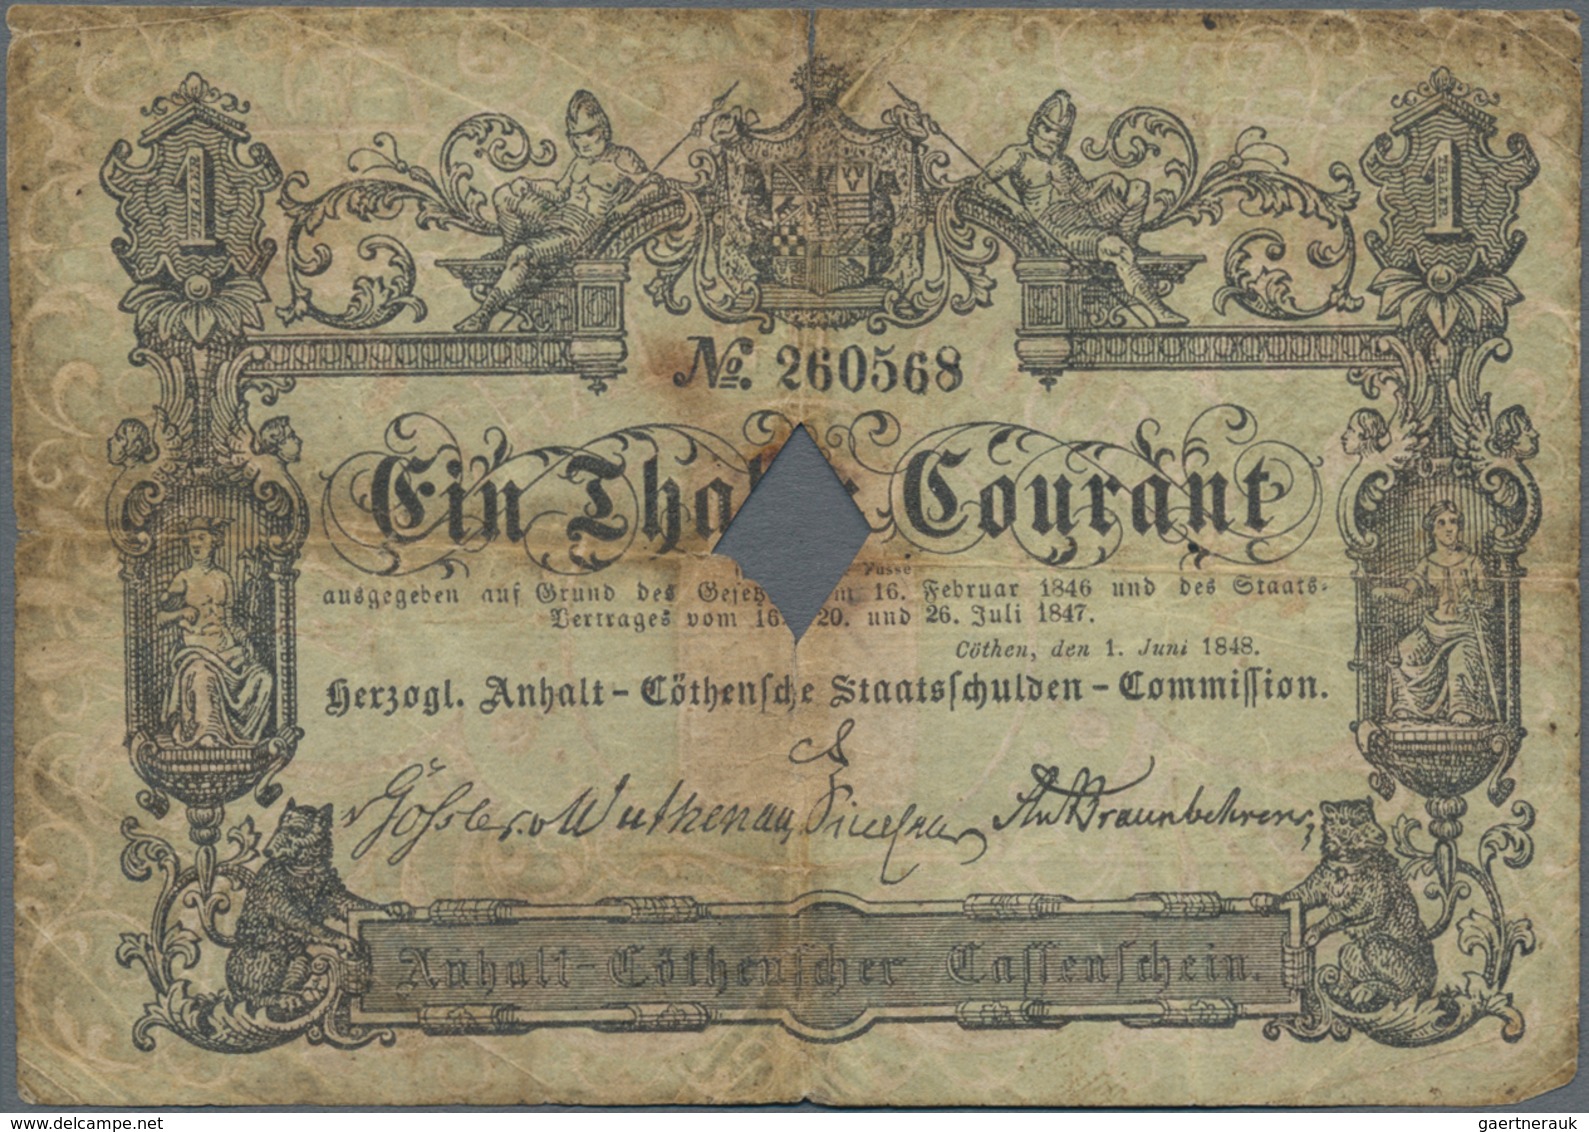 Deutschland - Altdeutsche Staaten: Herzogl. Anhalt-Cöthensche Staatsschulden-Commission 1 Thaler 184 - [ 1] …-1871 : German States